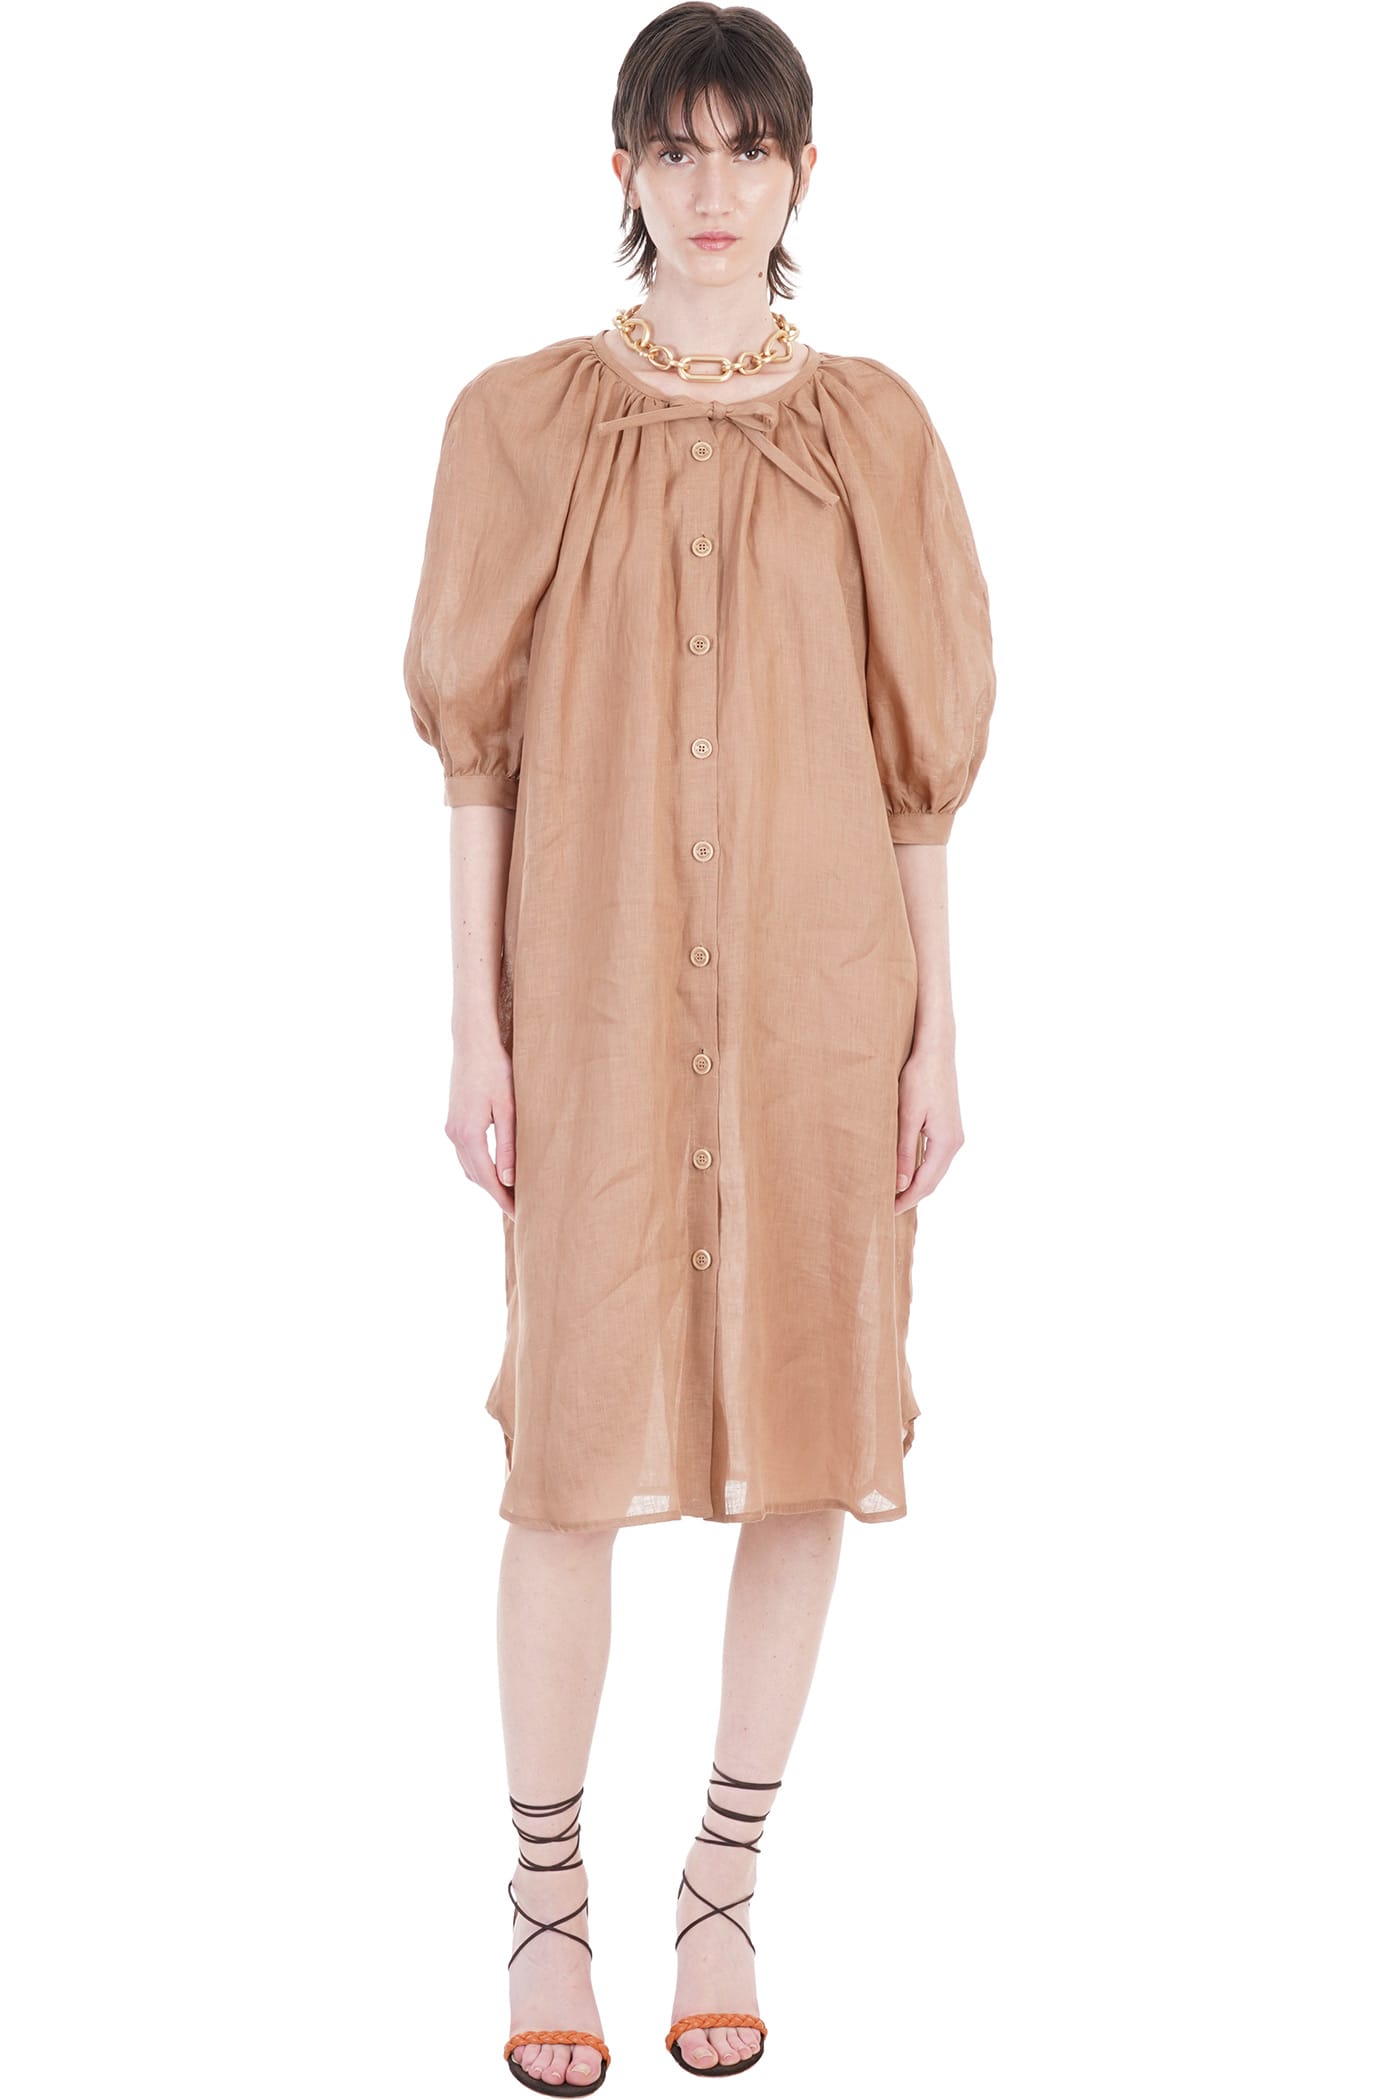 Ballantyne Dress In Brown Linen